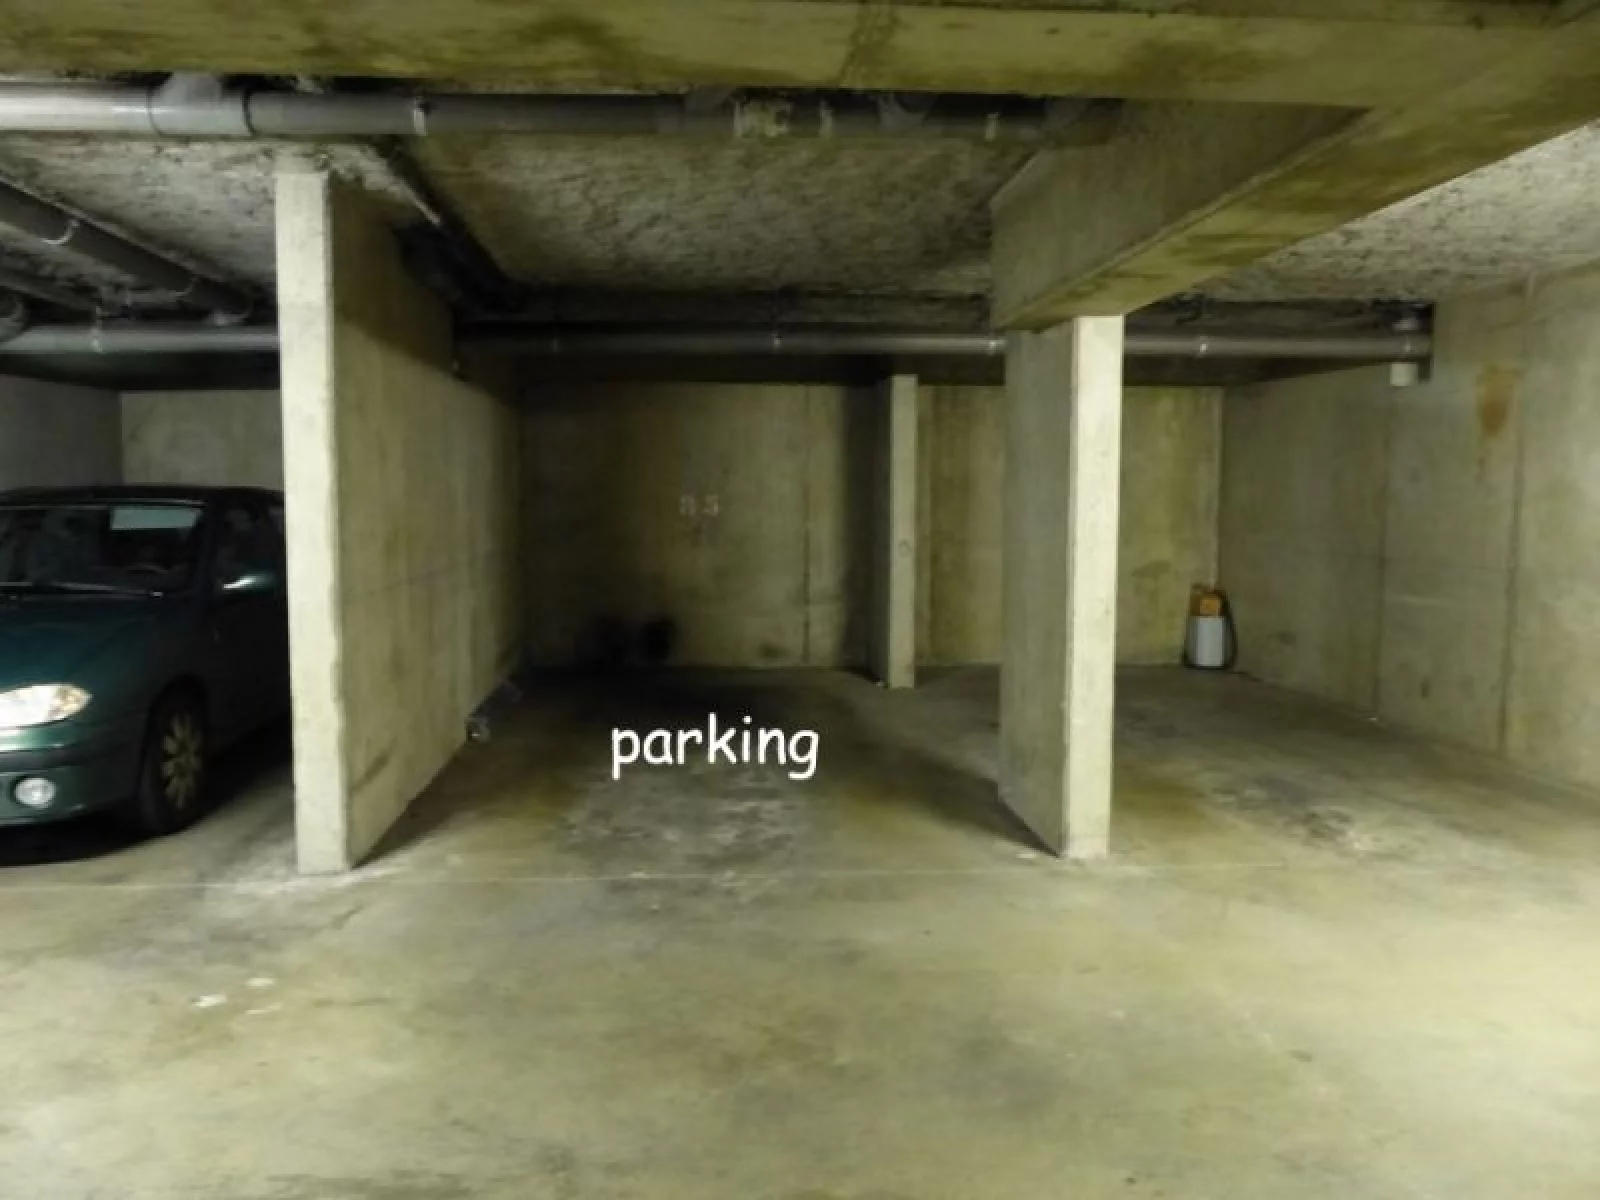 Location appartement meublé T2 49m² avec parking (Bordeaux)